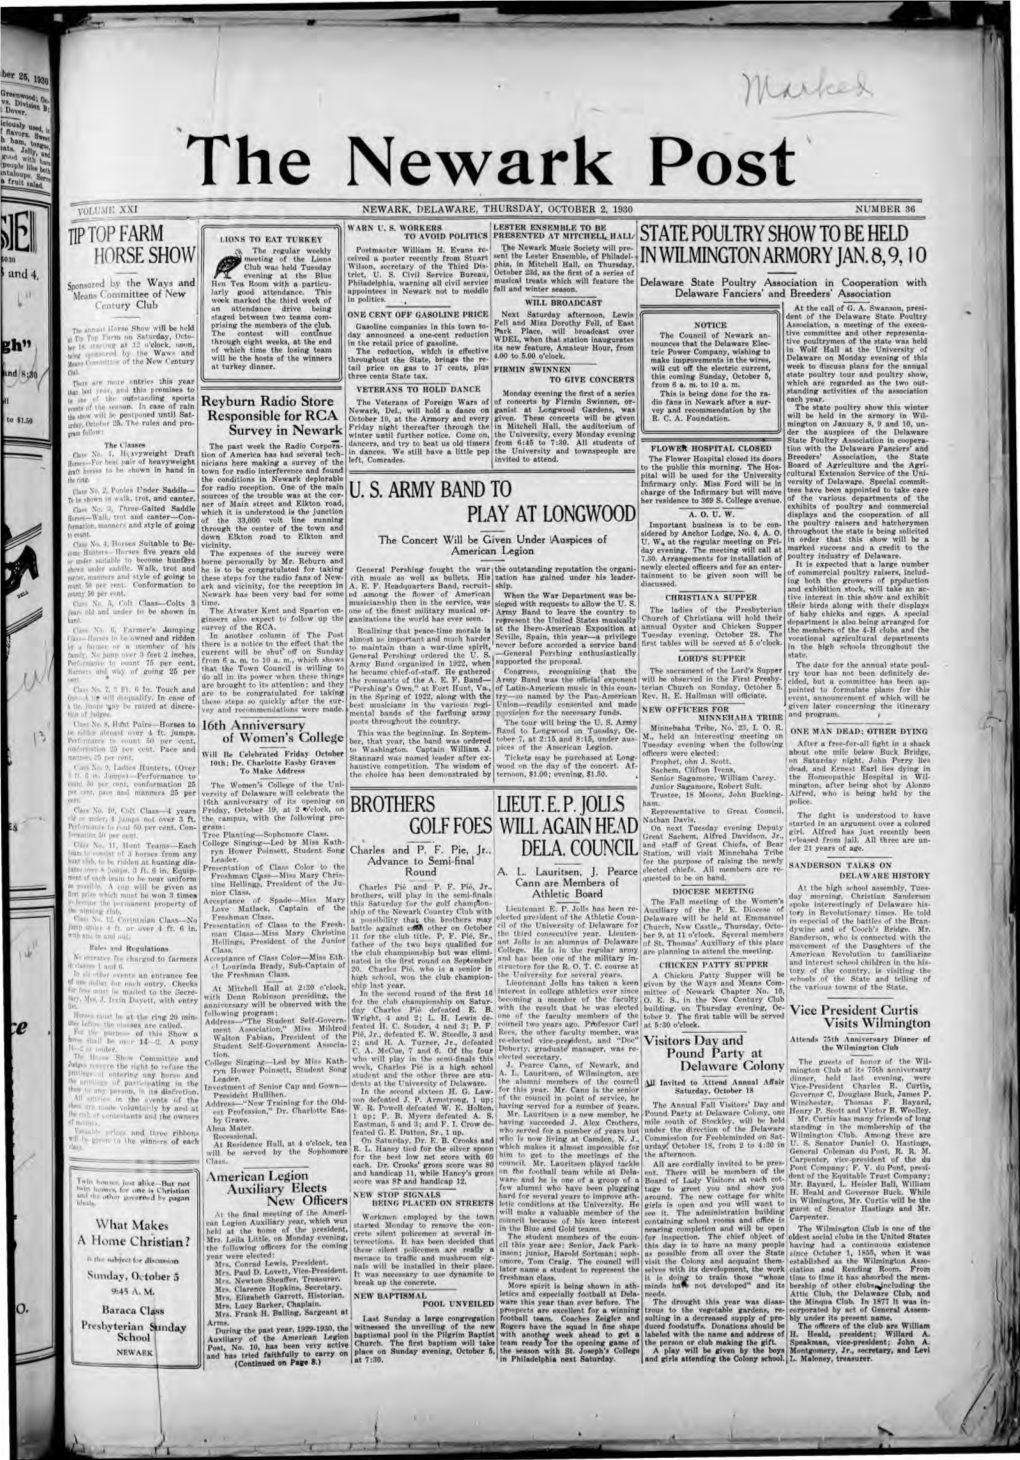 The Newark Post V OLUME XXI NEWARK DELAWARE THURSDAY OCTOBER 2, 1930 NUMBER 36